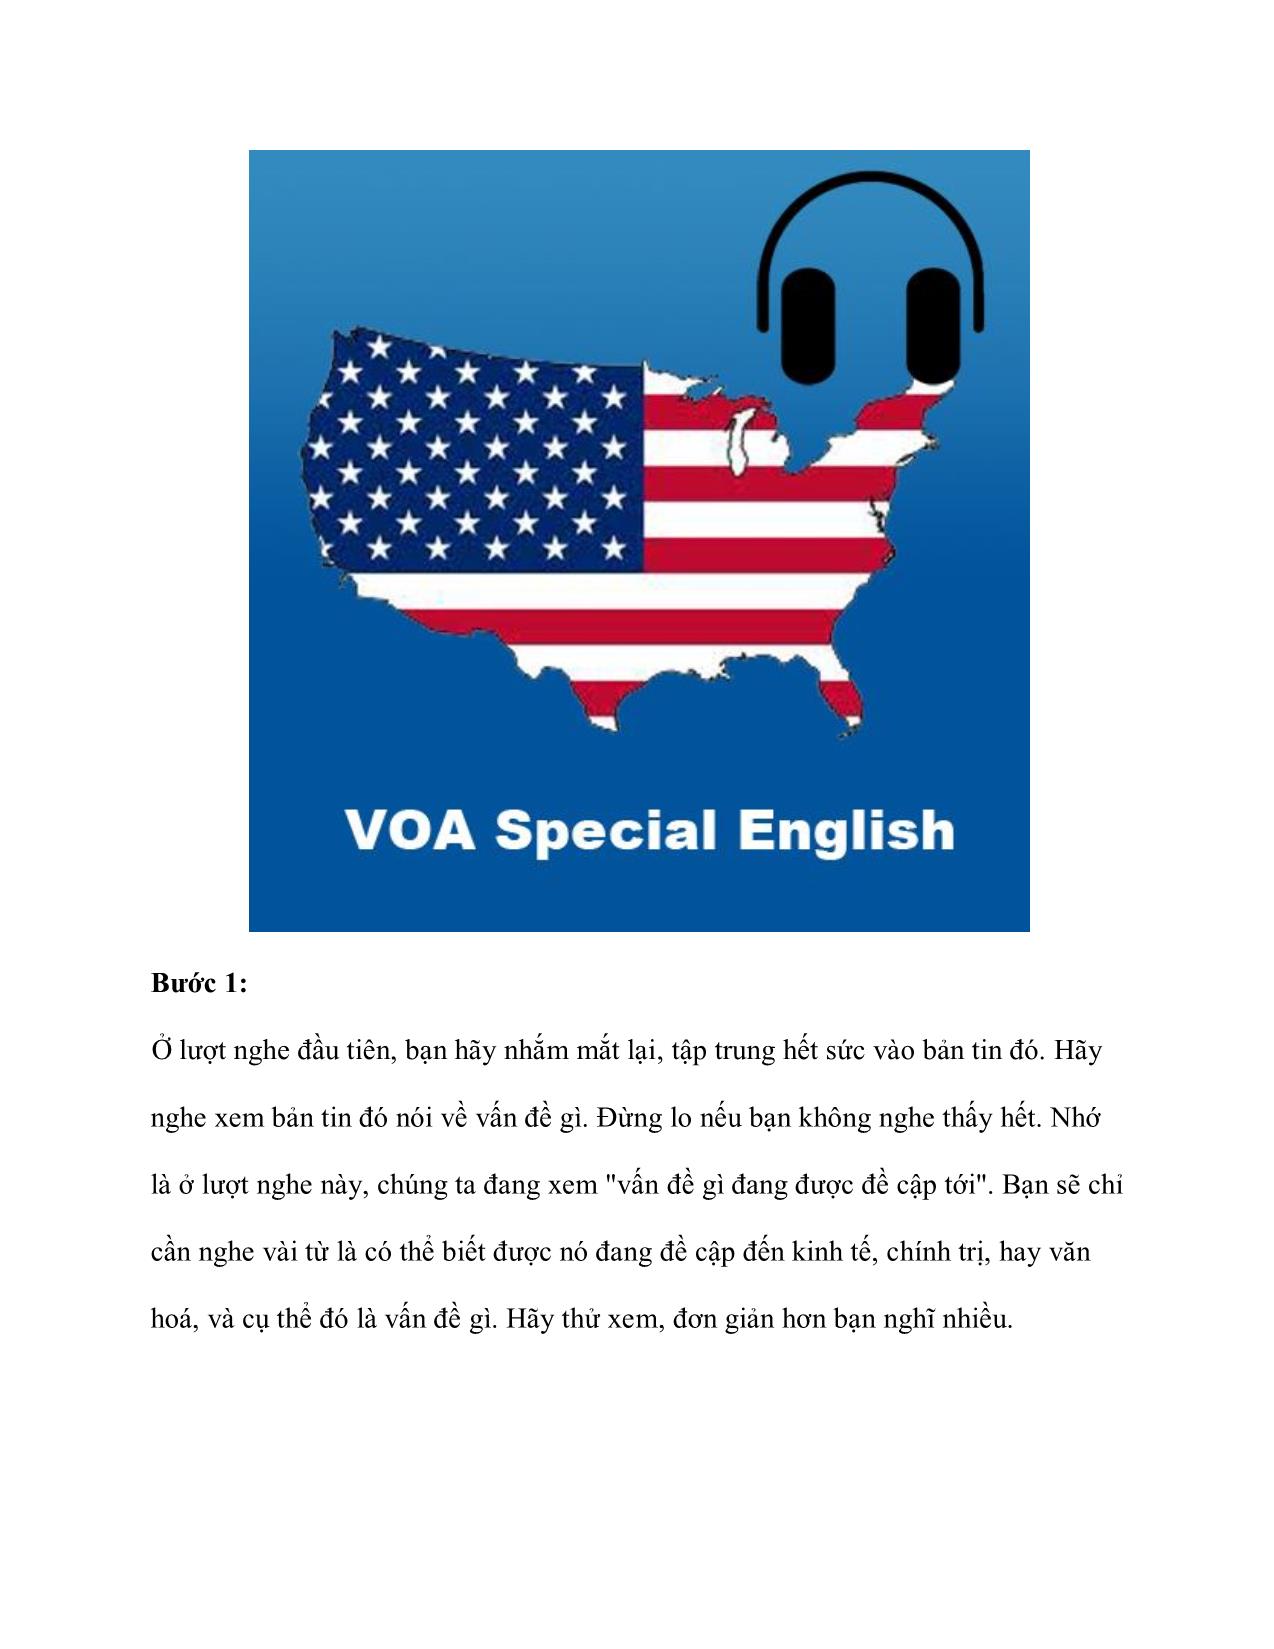 Khám phá bí quyết nghe Special VOA 1 cách hiệu quả trang 3